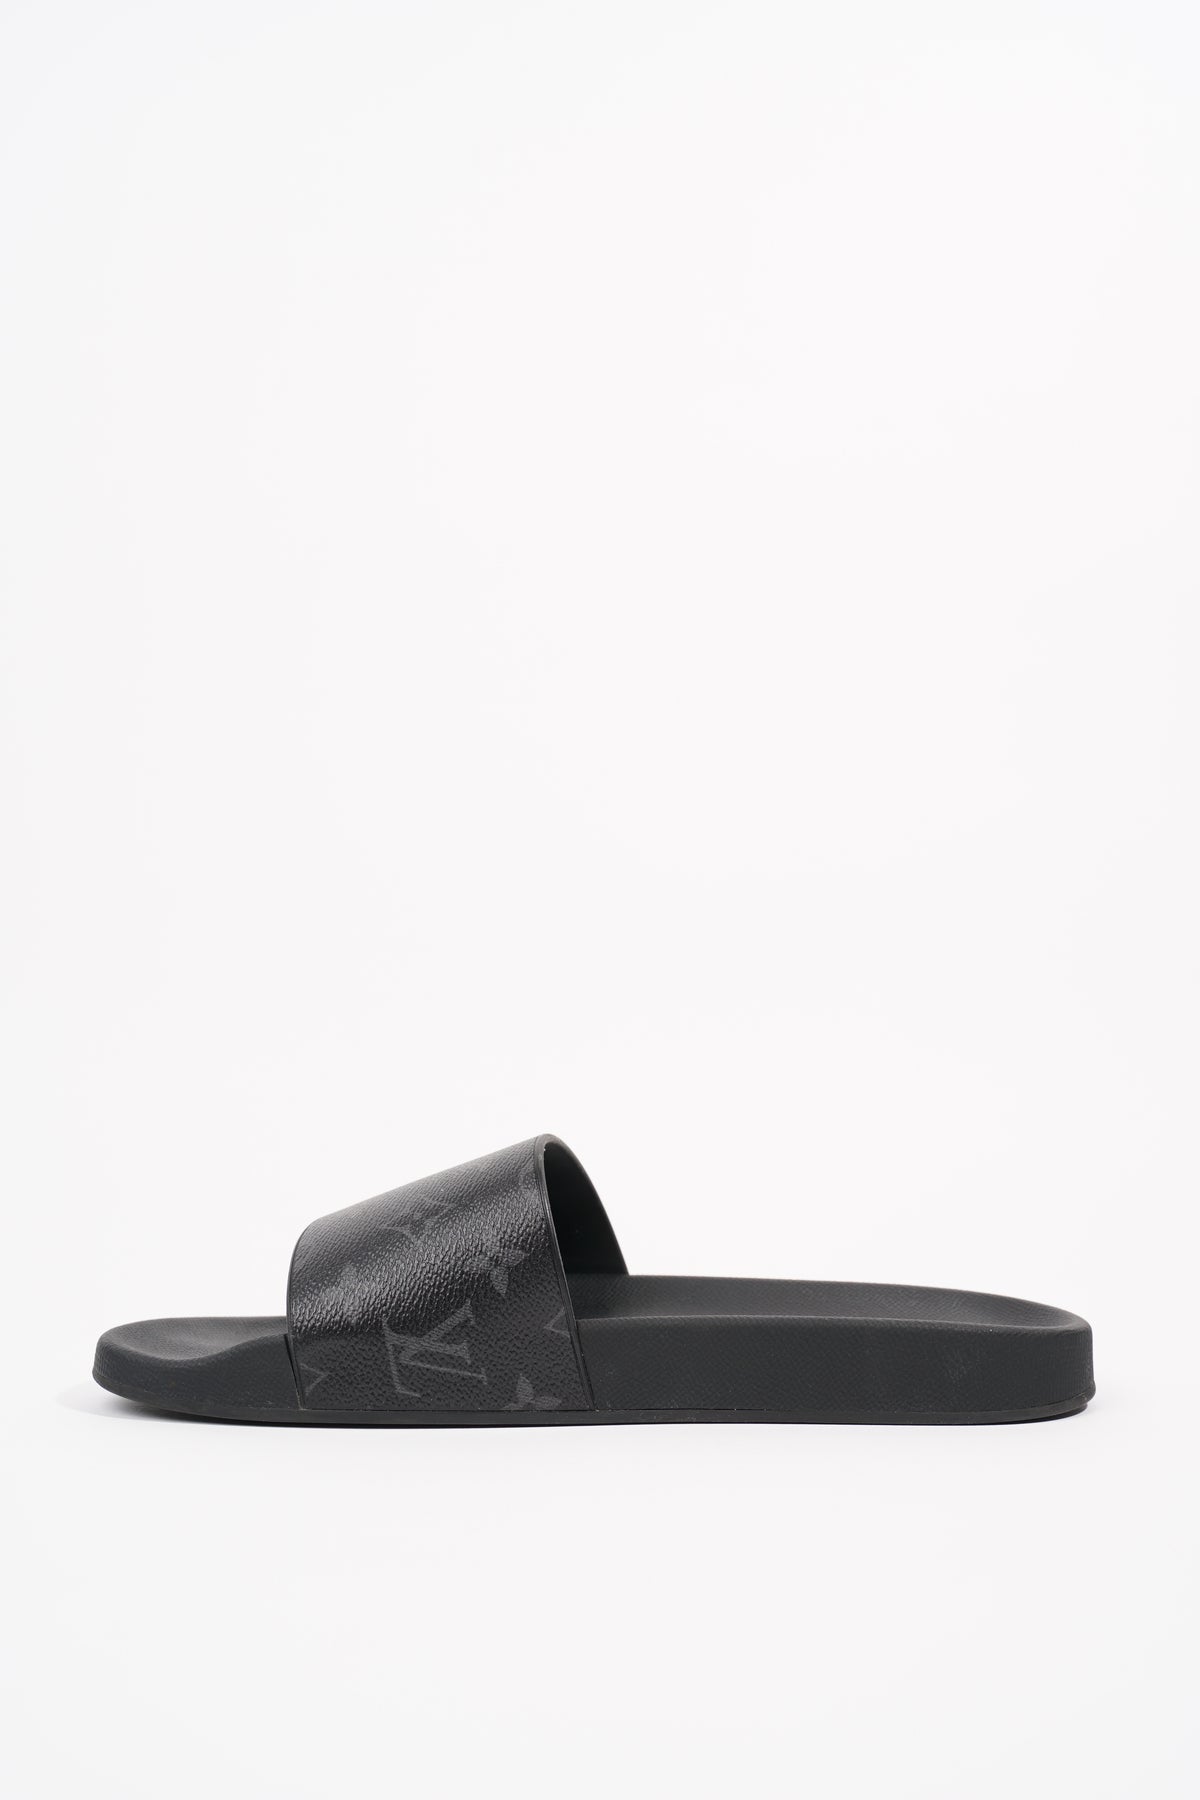 Louis Vuitton - Waterfront Mules - Black - Men - Size: 08 - Luxury